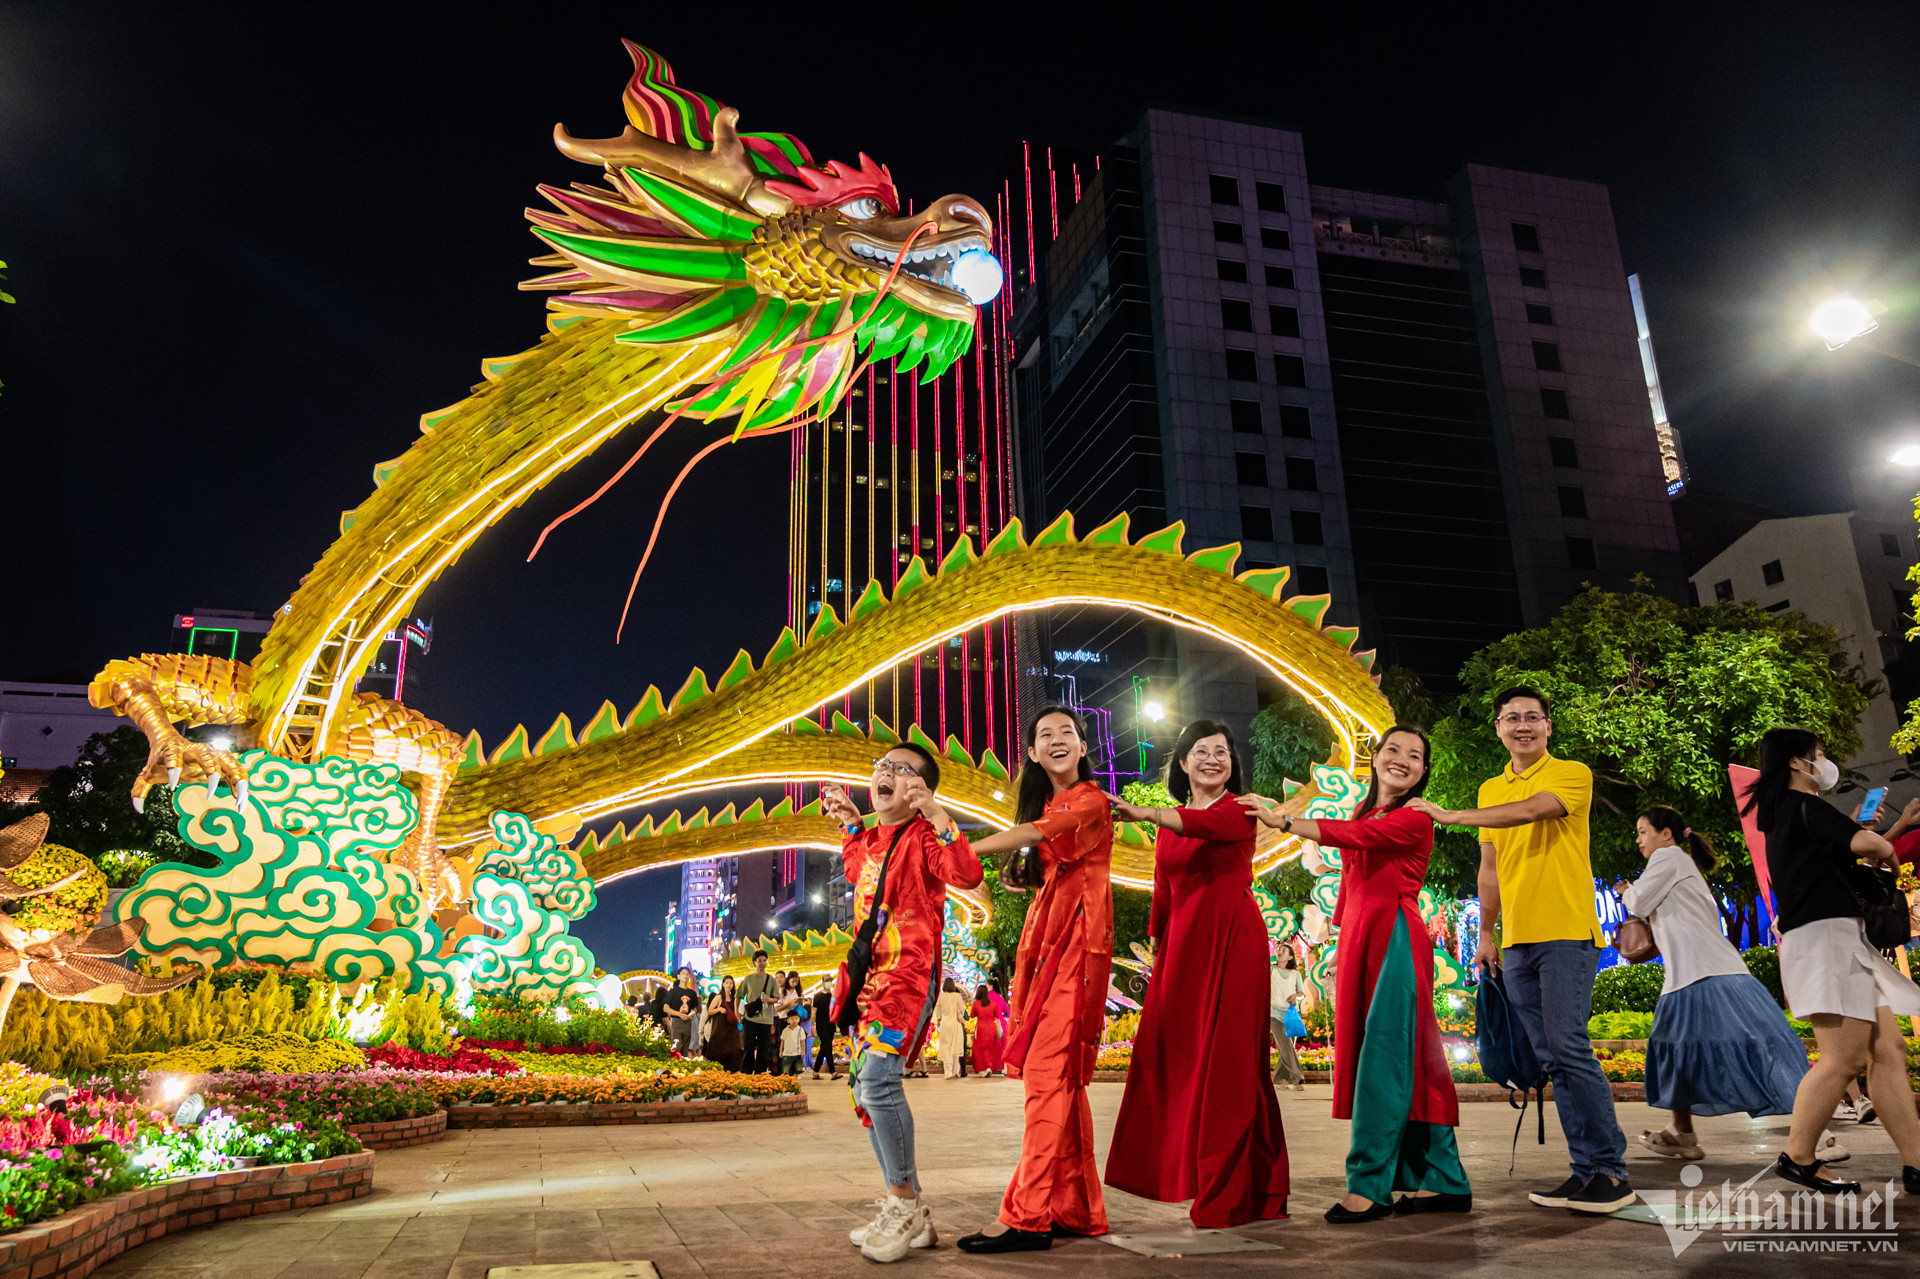 Tết Việt độc đáo không chỉ ở những nét đẹp phong tục hay những món ăn truyền thống mà còn đa dạng sắc màu bởi nó không bó hẹp trong phạm vi lễ tết thông thường: cúng tiễn năm cũ, mừng năm mới, vui chơi, hội hè.